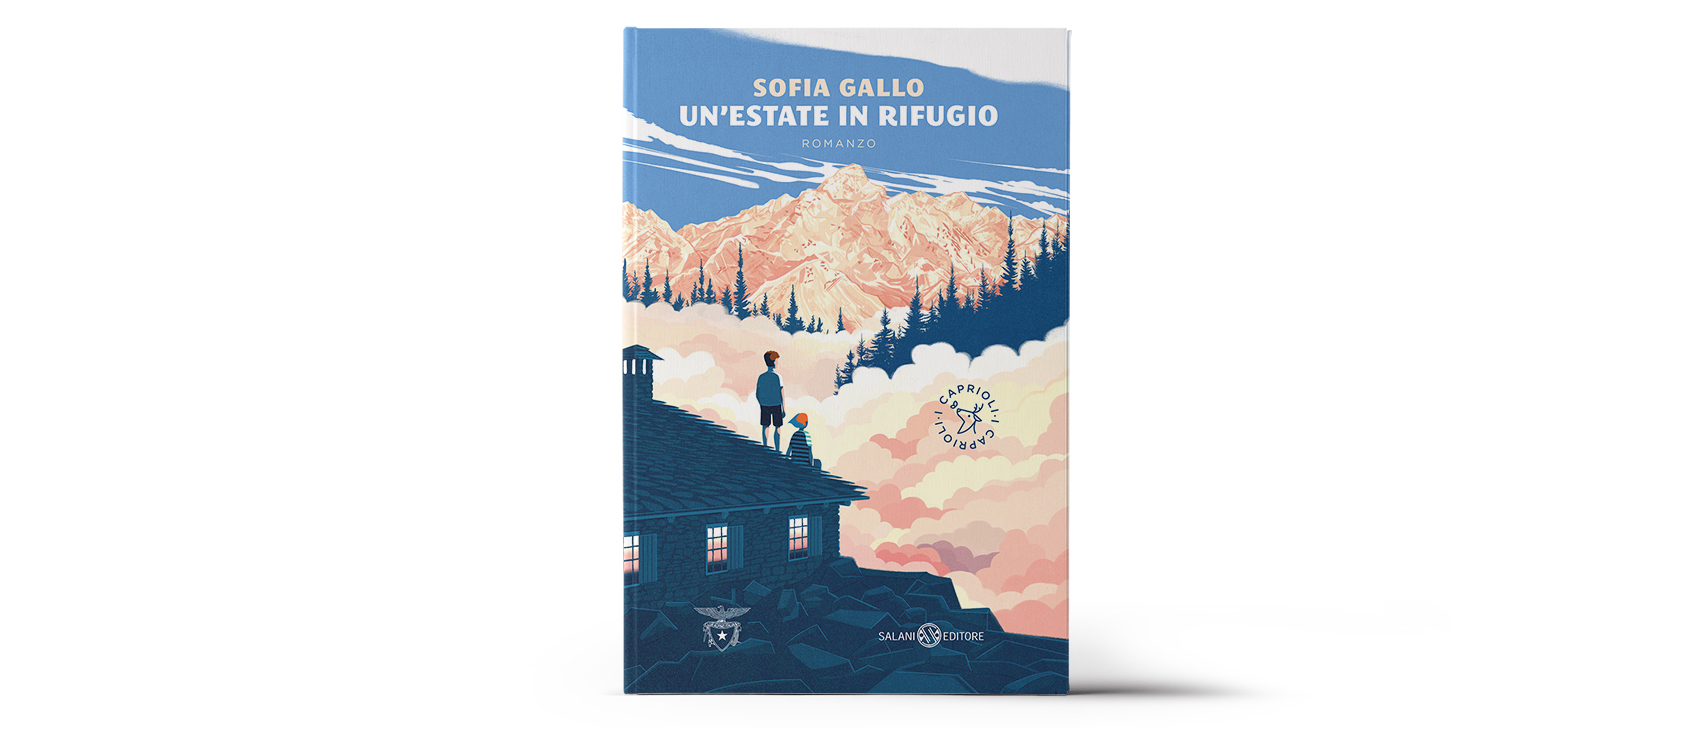 "Un’estate in rifugio" (A summer in a mountain hut) book